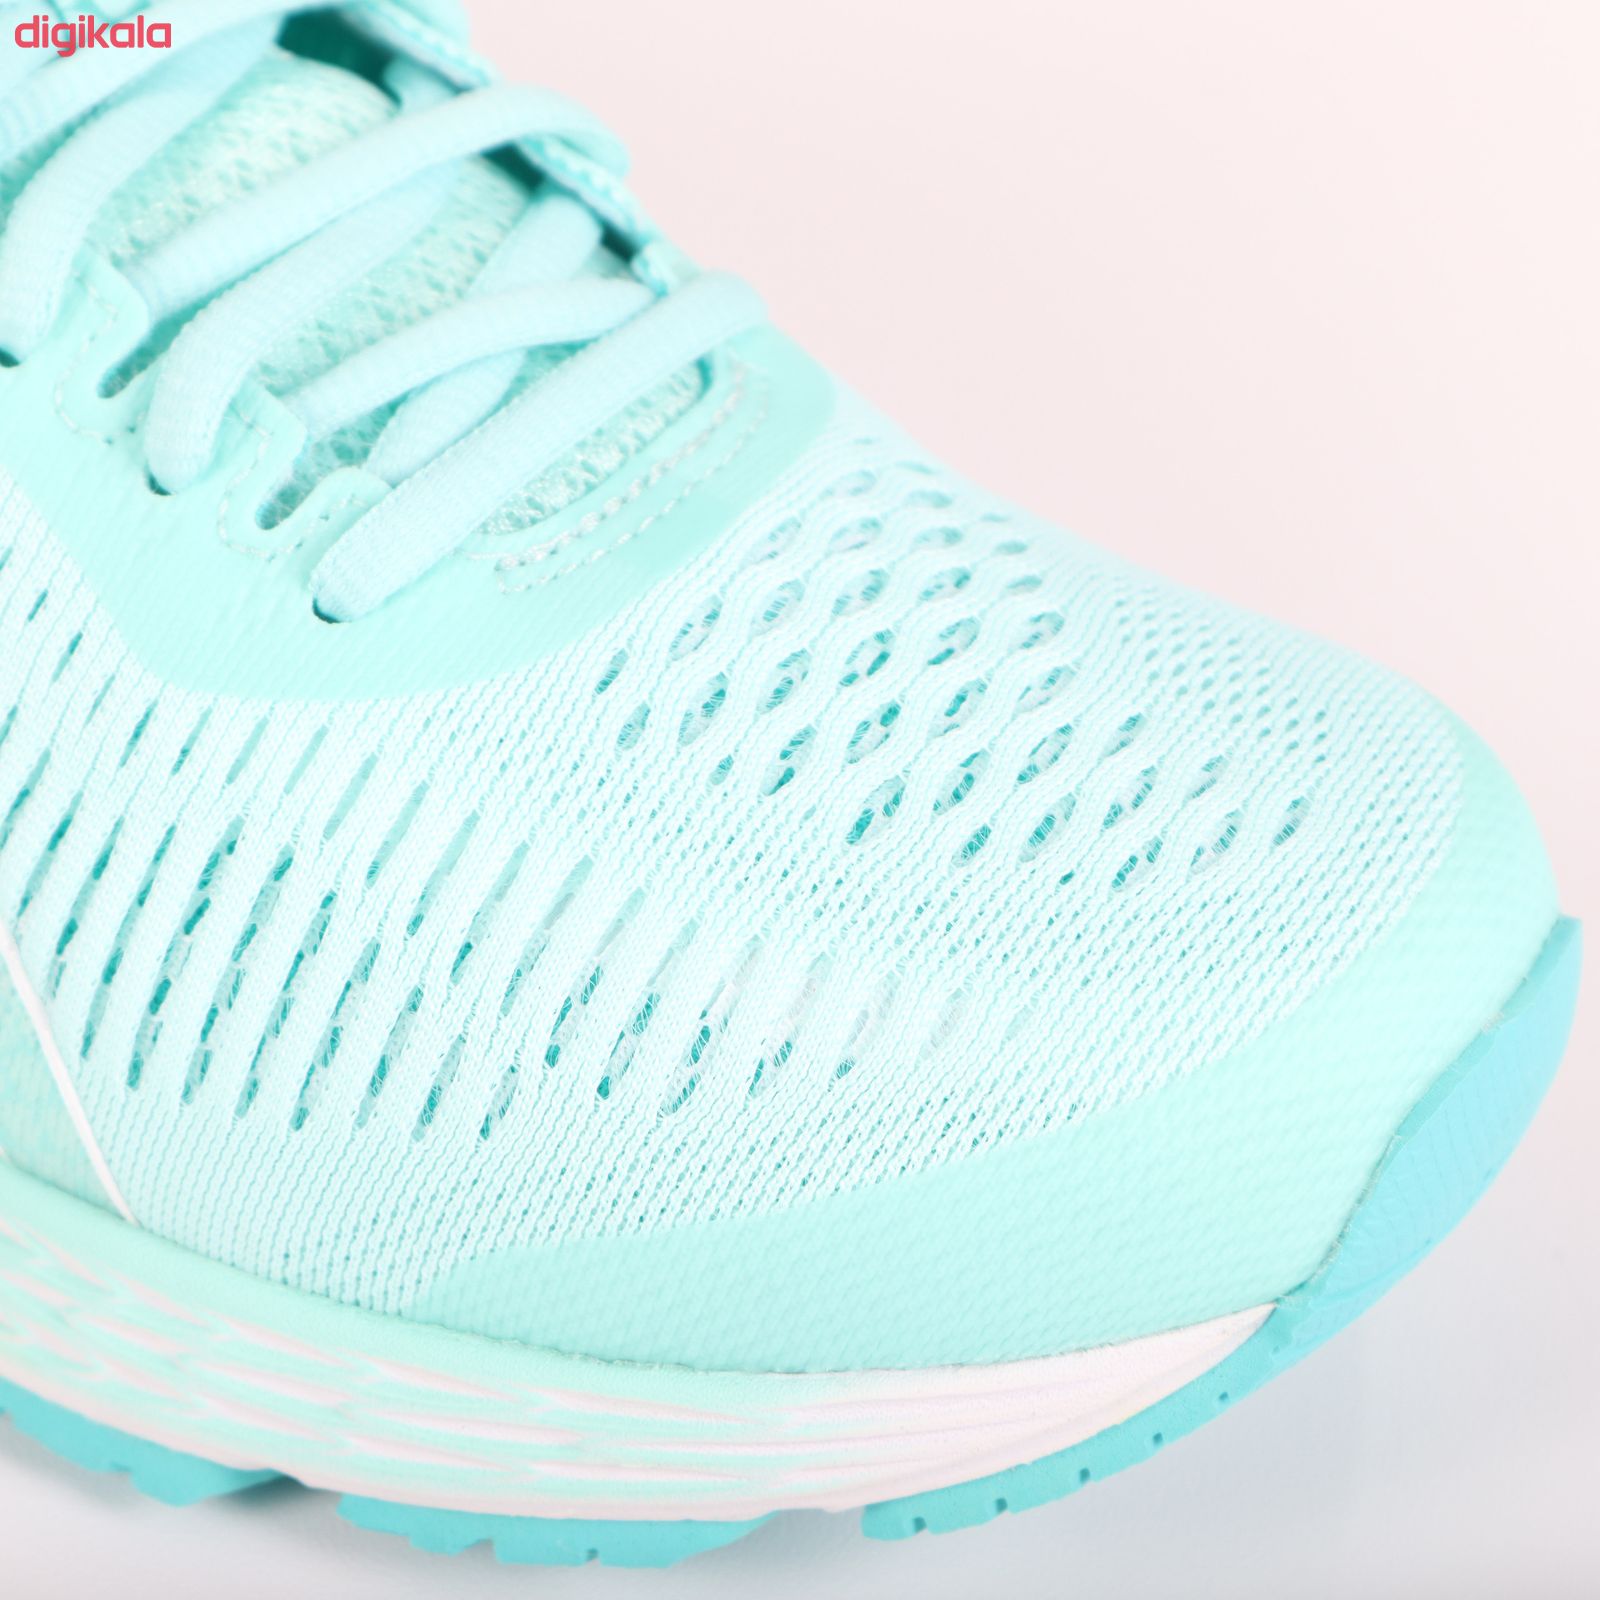 کفش مخصوص دویدن زنانه اسیکس مدل GEL-KAYANO 25 کد 1012A026-402